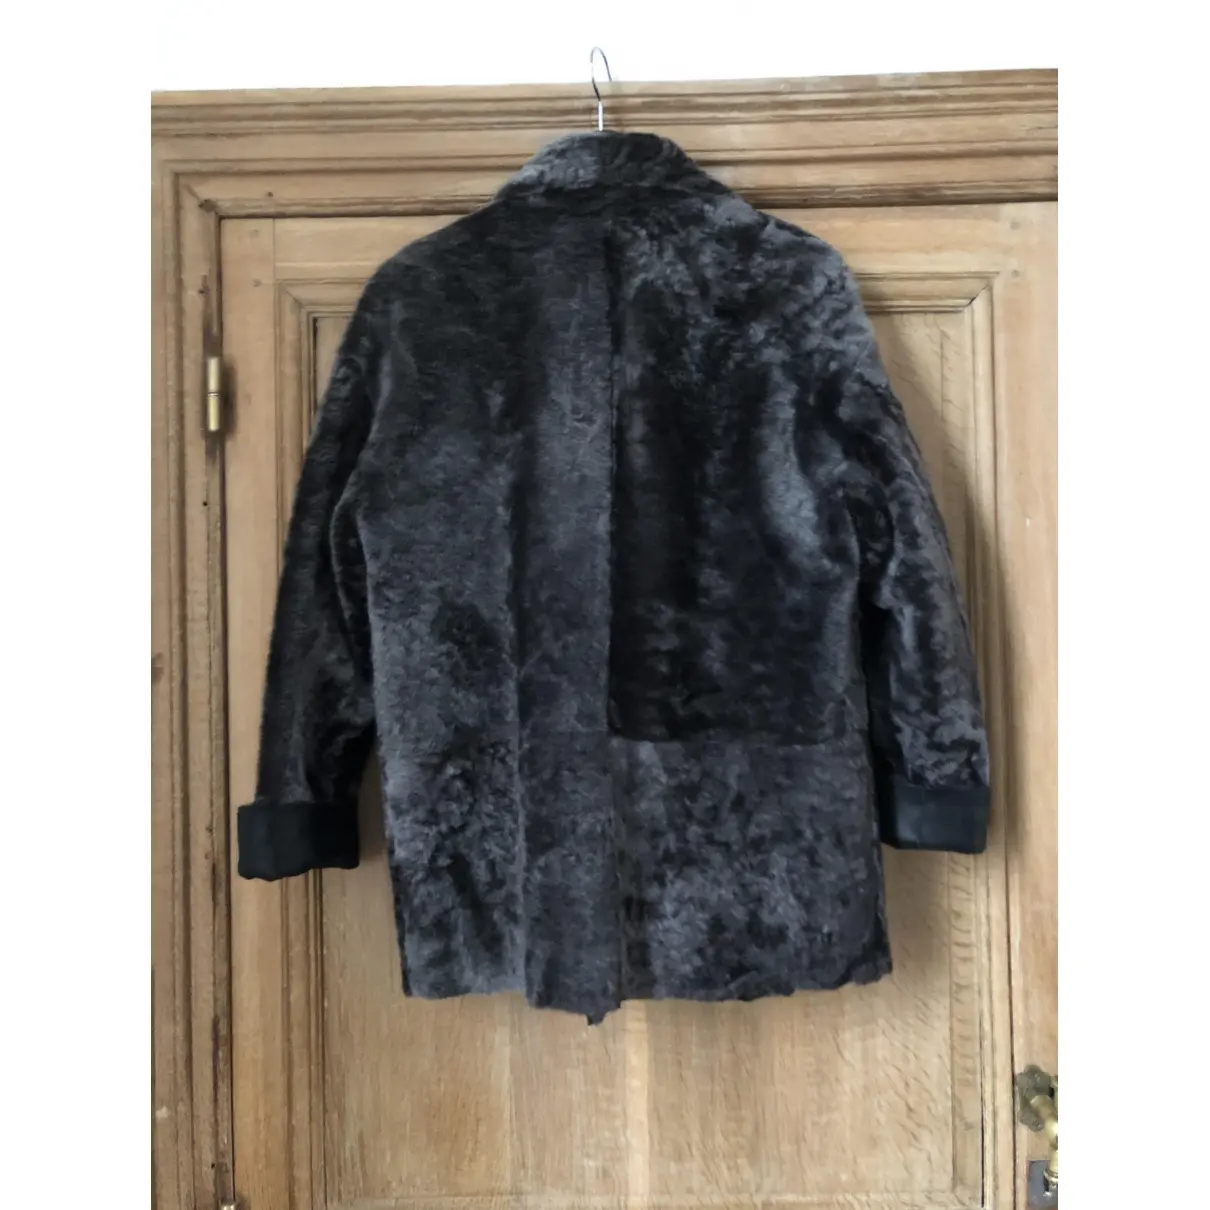 Buy Enes Leather jacket online